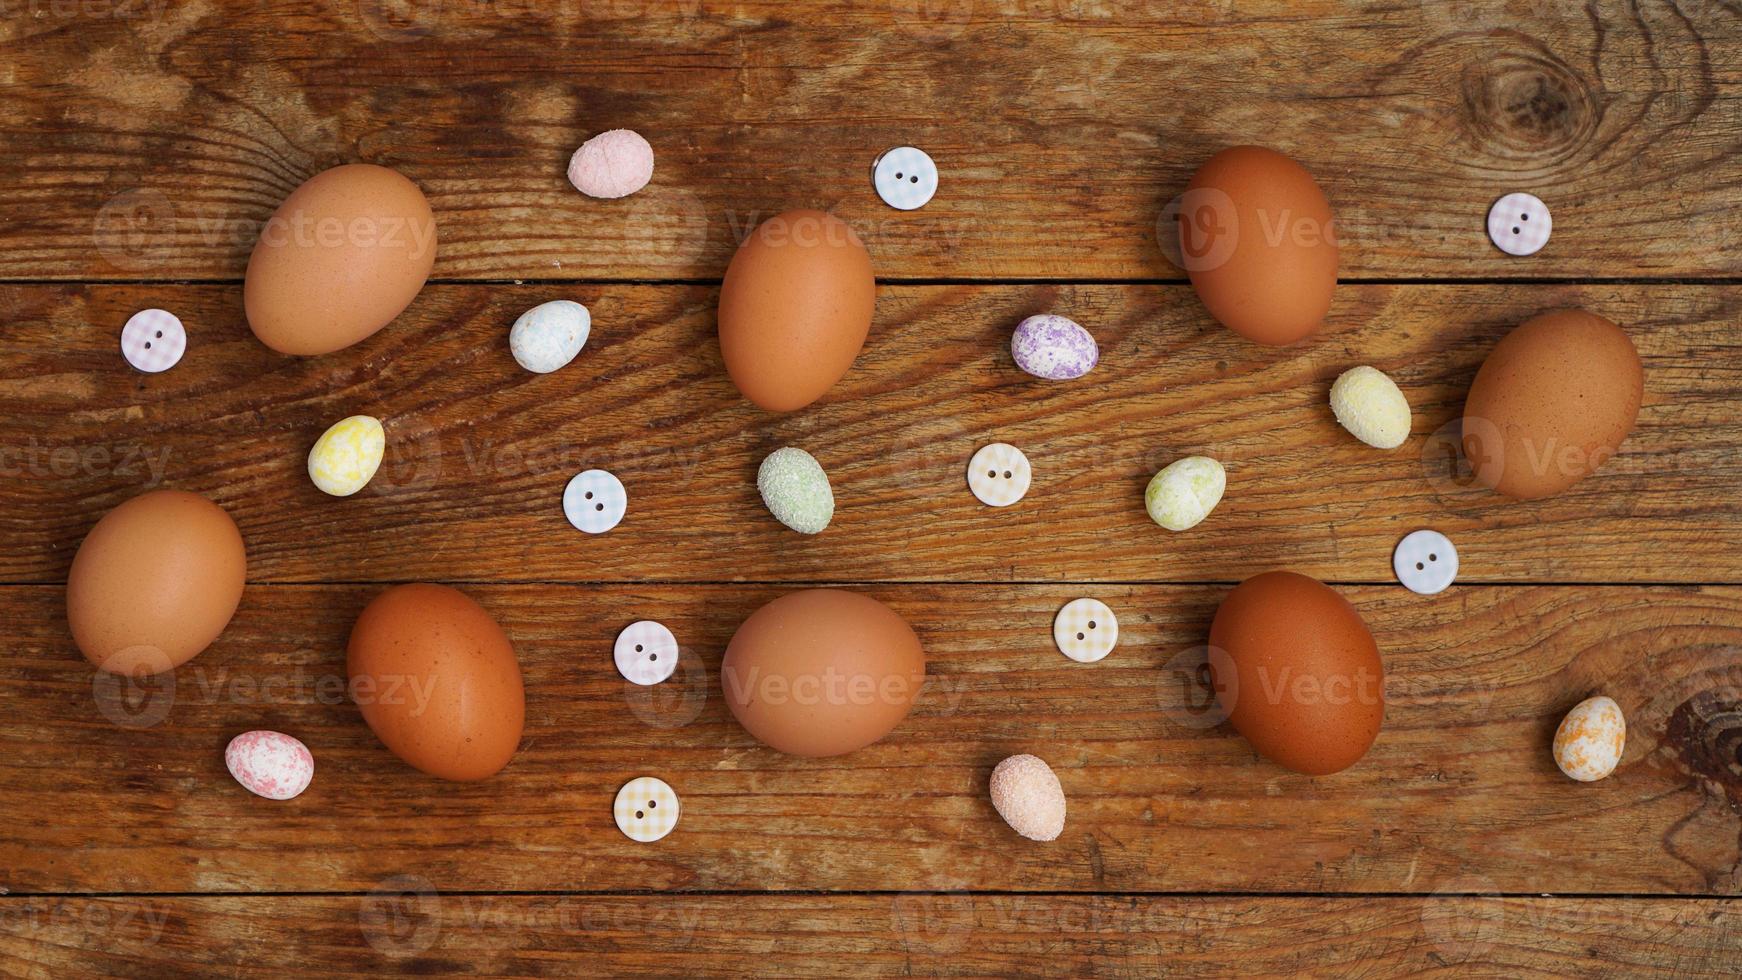 huevos sobre un fondo rústico de madera. huevos de gallina frescos foto